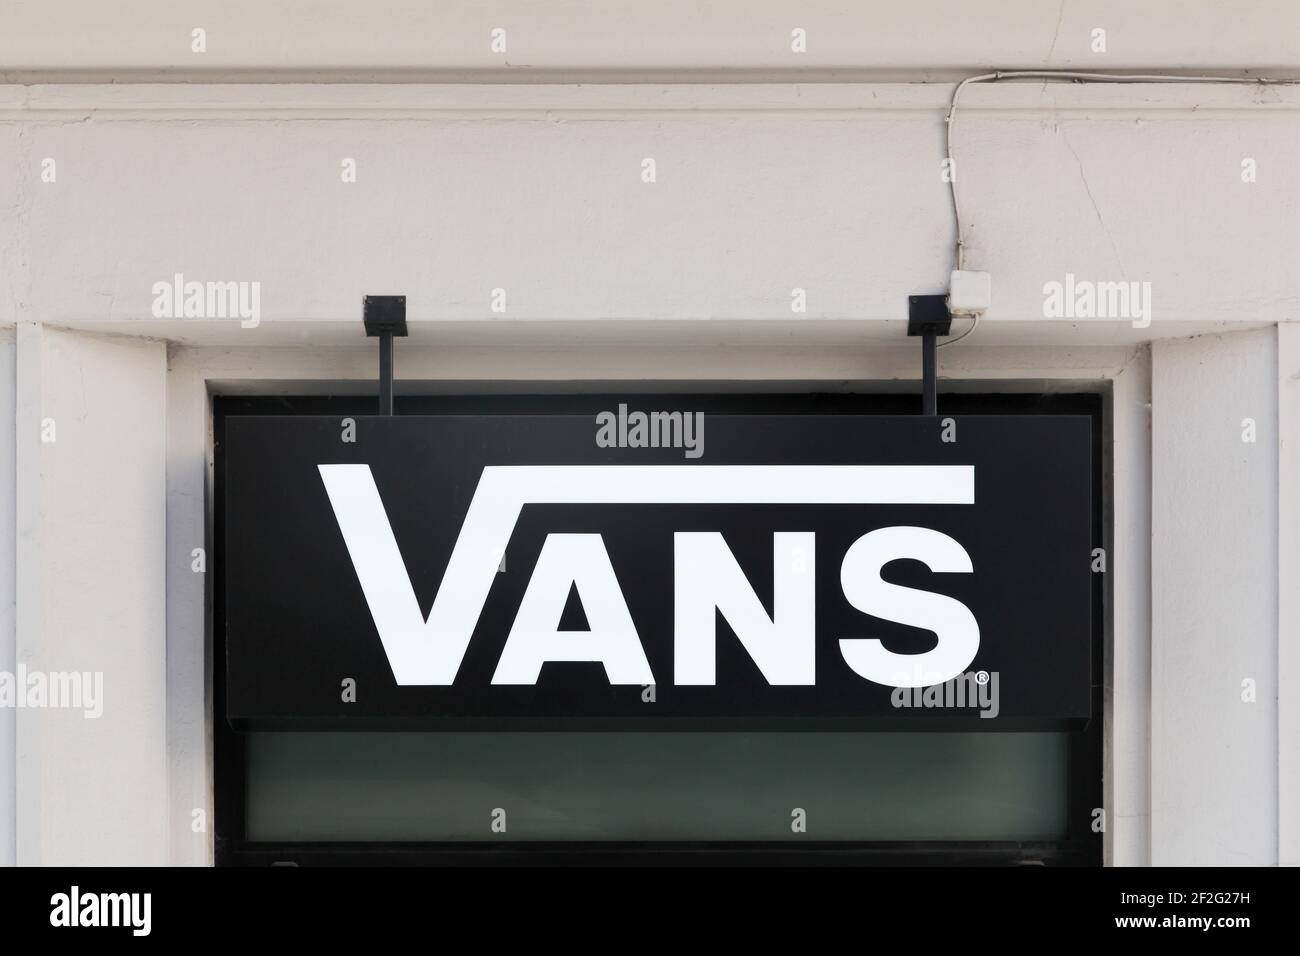 Lyon, Frankreich - 26. Mai 2017: Vans-Logo an der Wand. Vans ist ein amerikanischer Schuhhersteller mit Sitz in Cypress, Kalifornien, im Besitz der VF Corporation Stockfoto